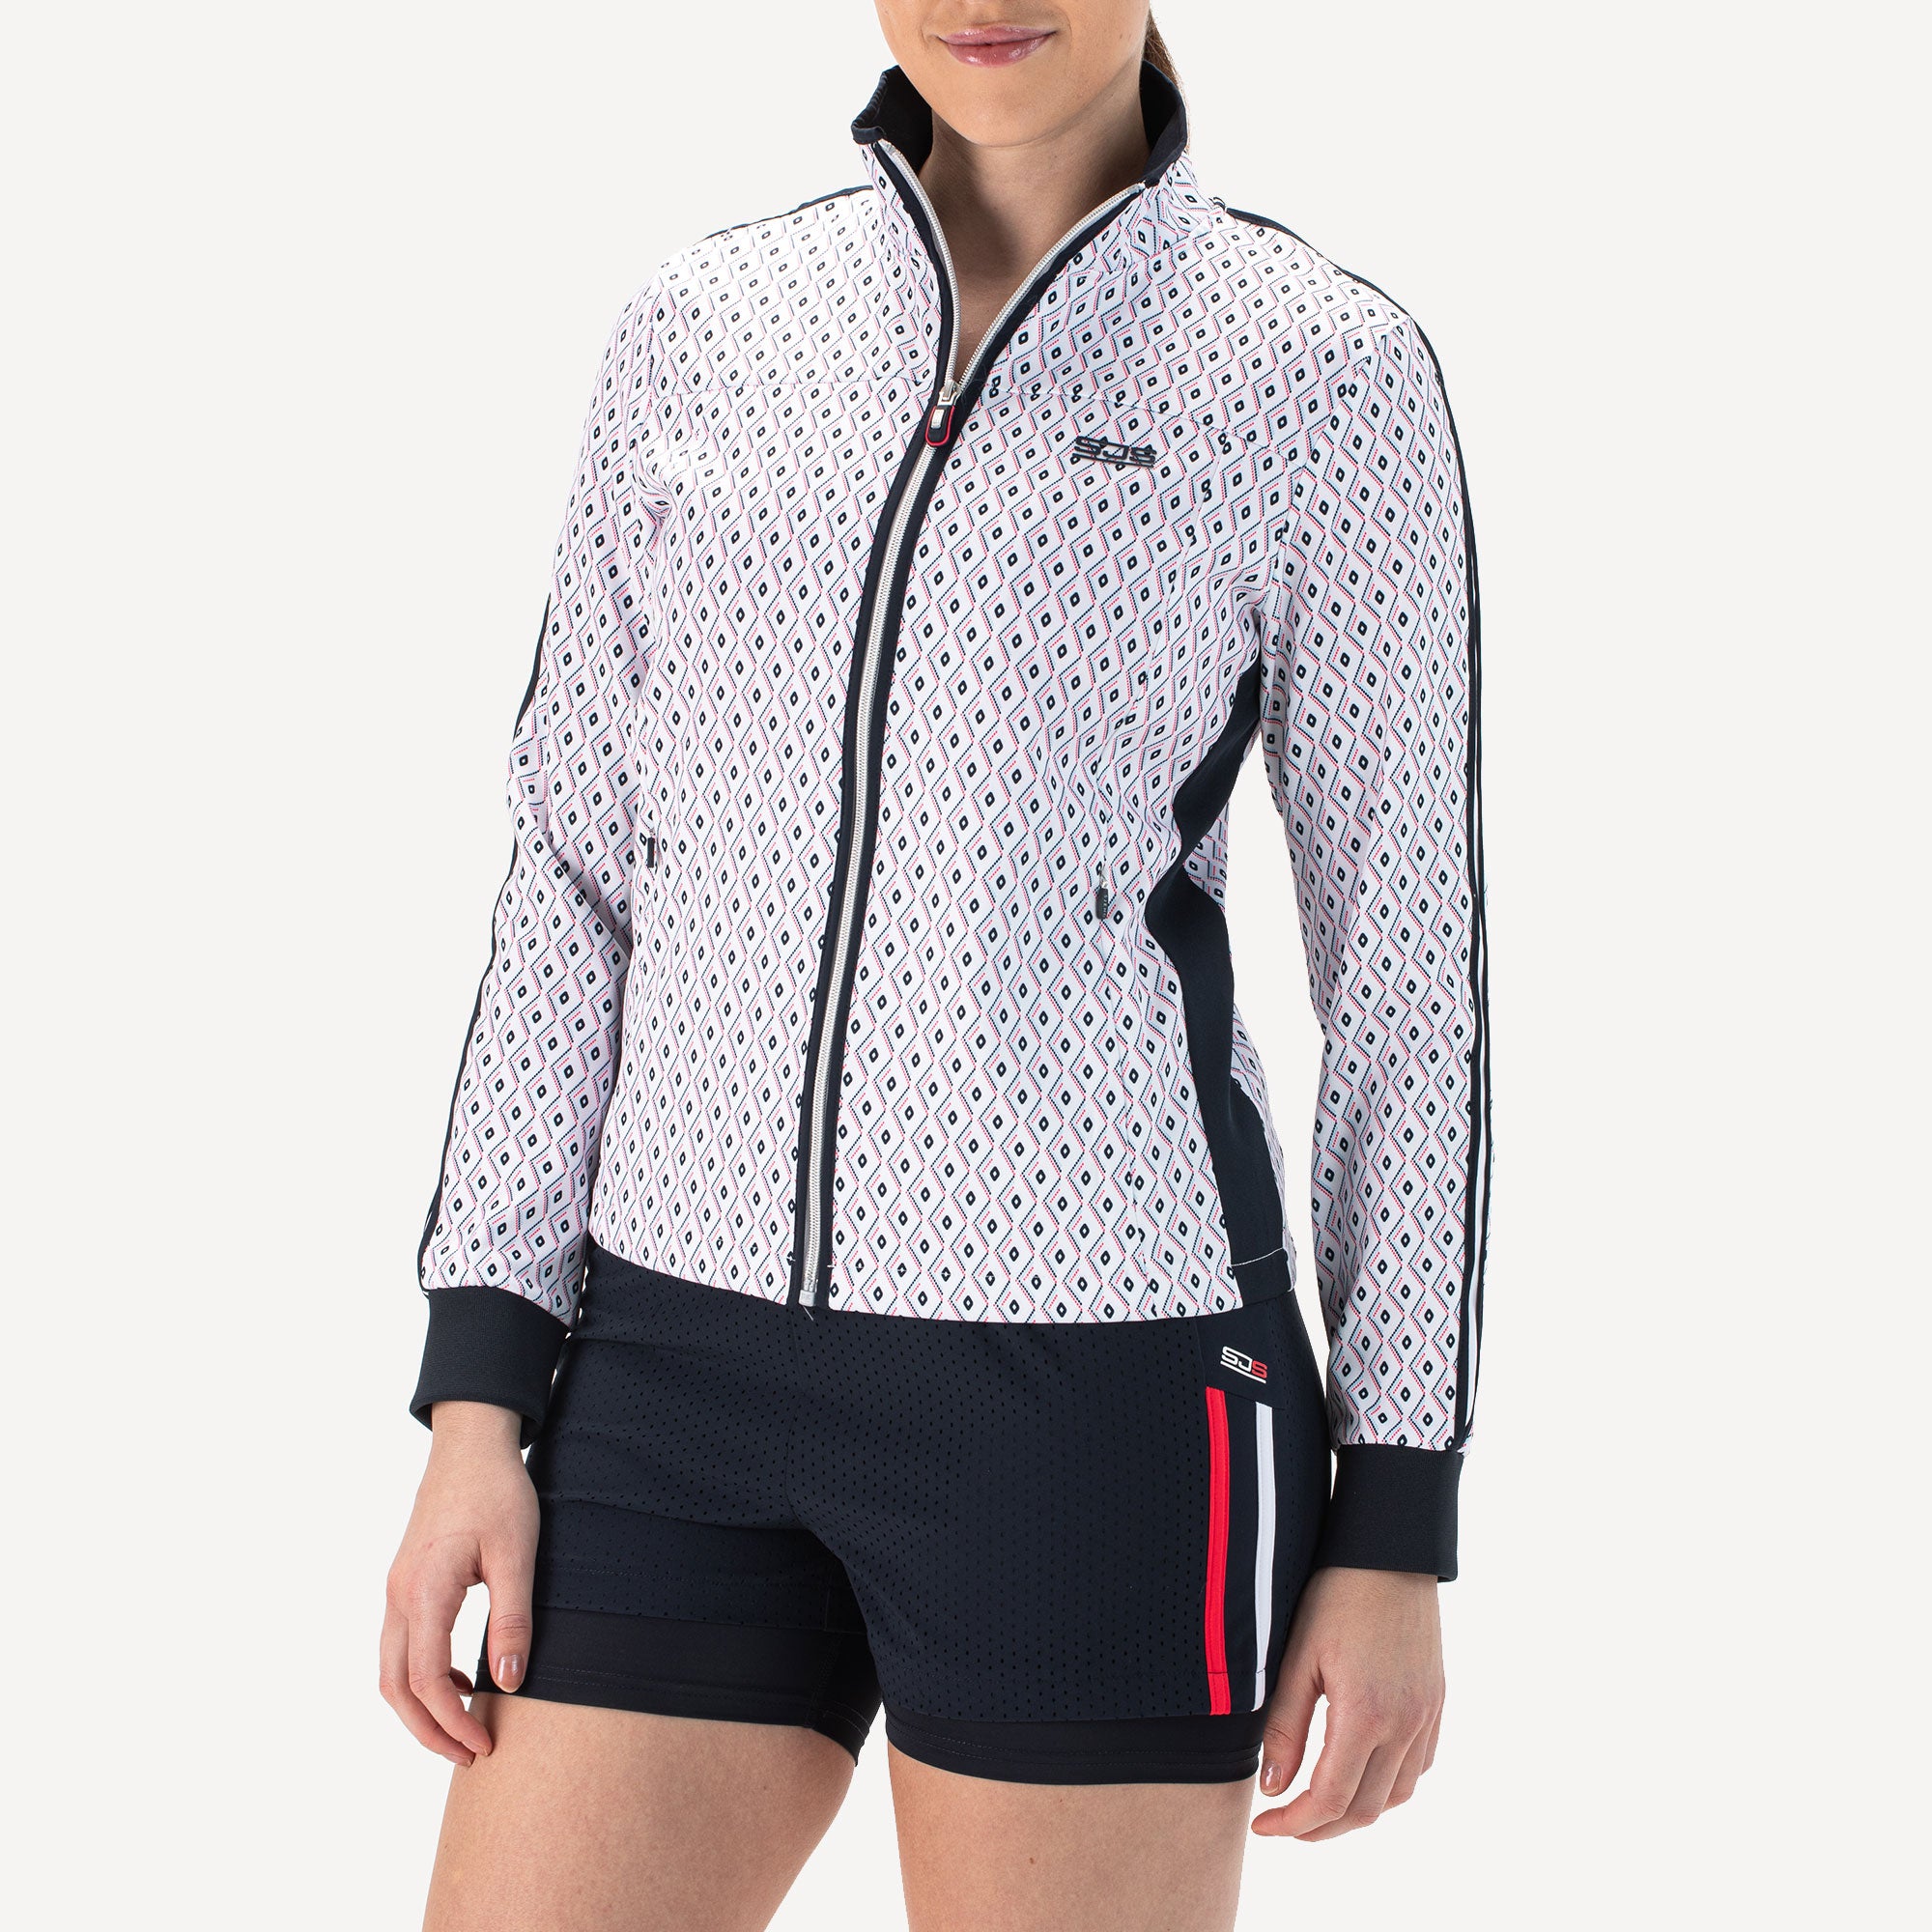 Sjeng Sports Fea Women's Tennis Jacket - White (1)